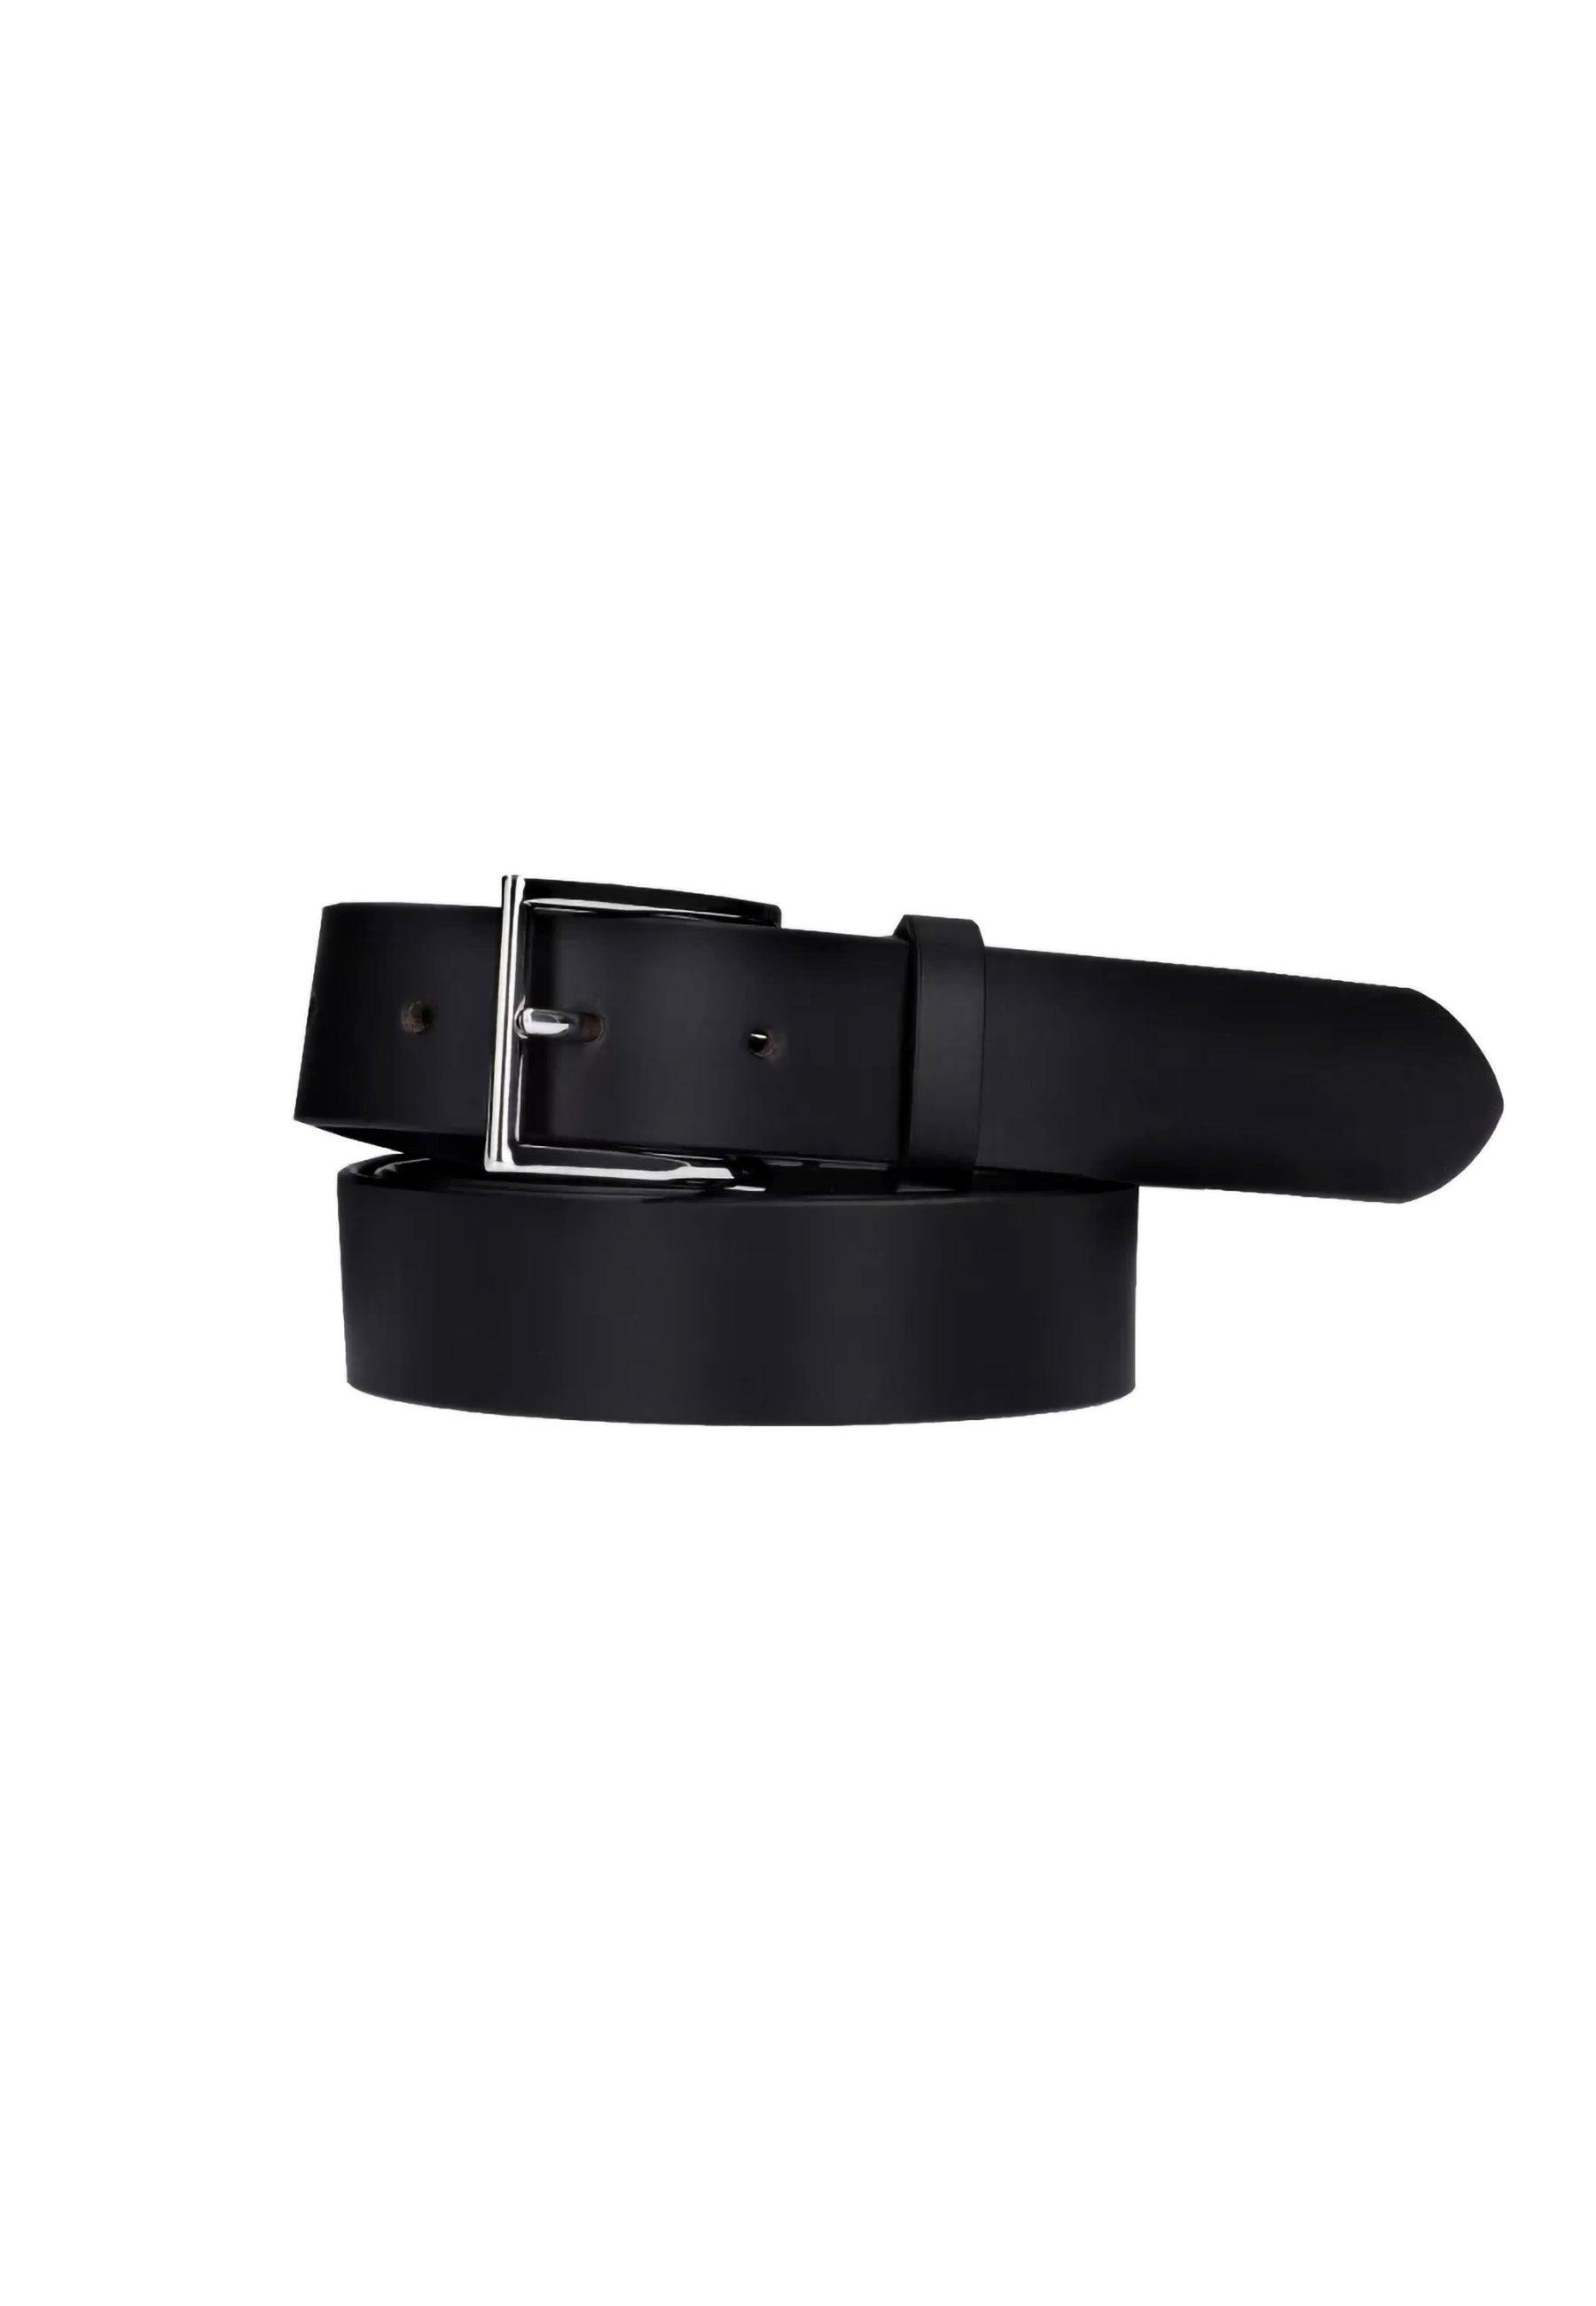 GUESS Cintura Uomo Black BM7774P3435 - Sandrini Calzature e Abbigliamento